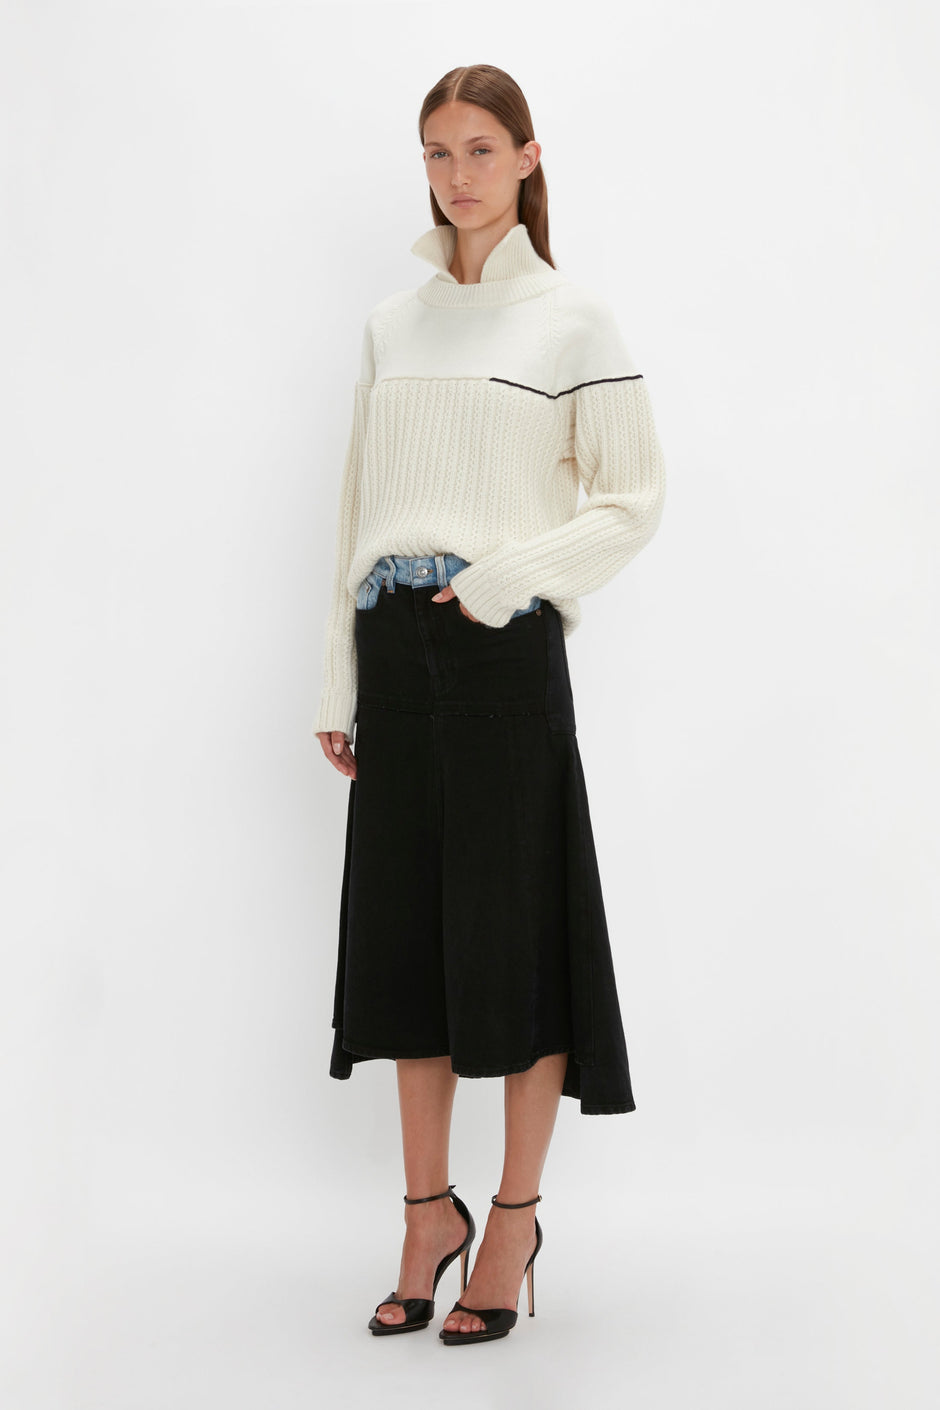 Luxury Designer Knitwear & Cashmere Jumpers – Victoria Beckham